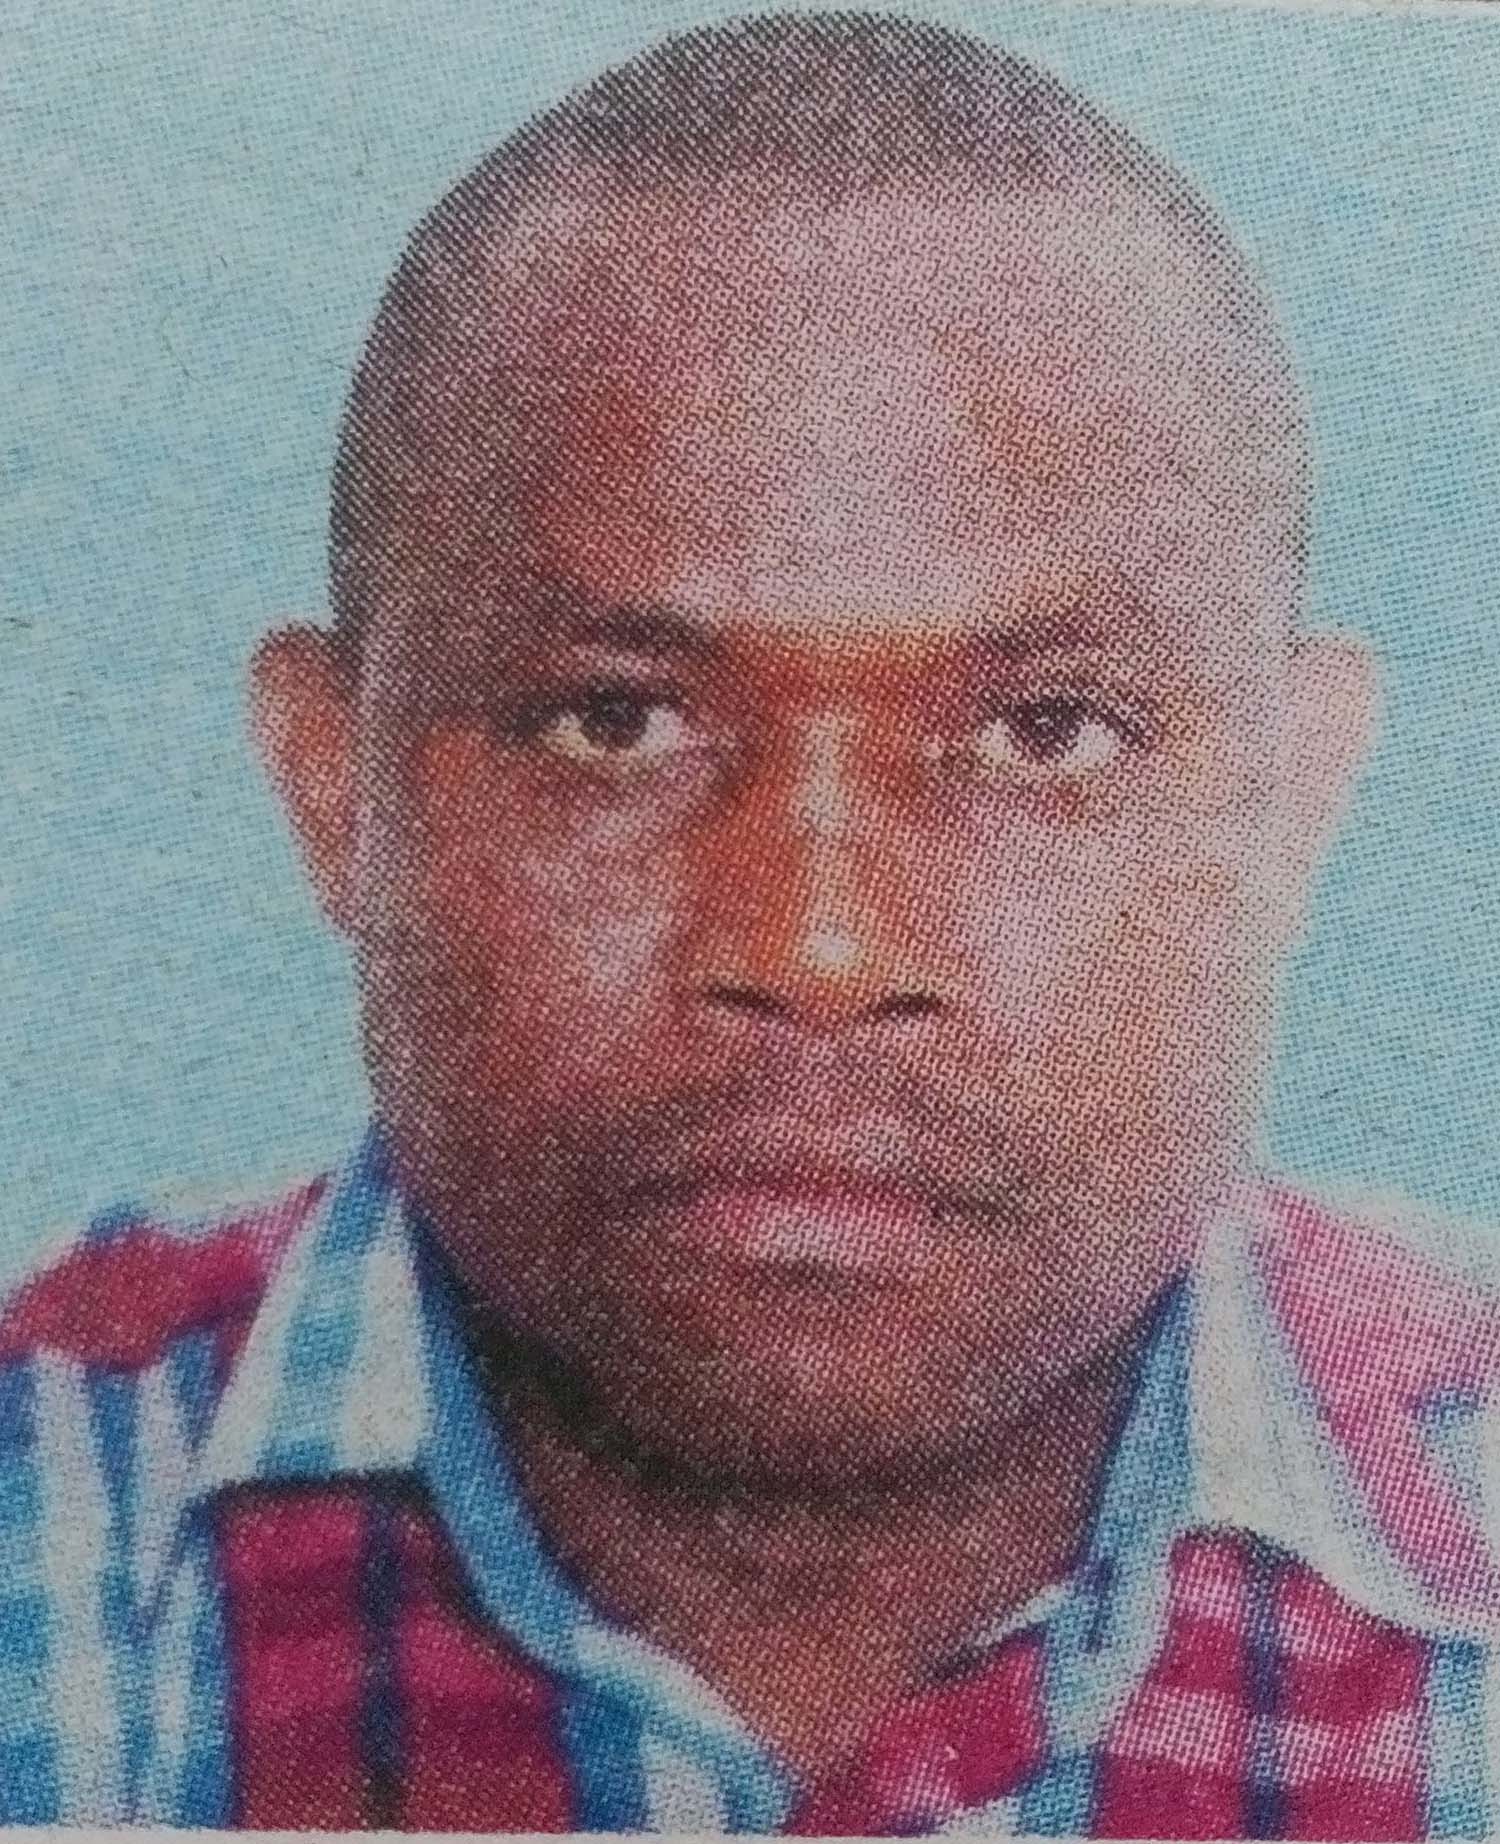 Obituary Image of Benard Ombui Onsongo